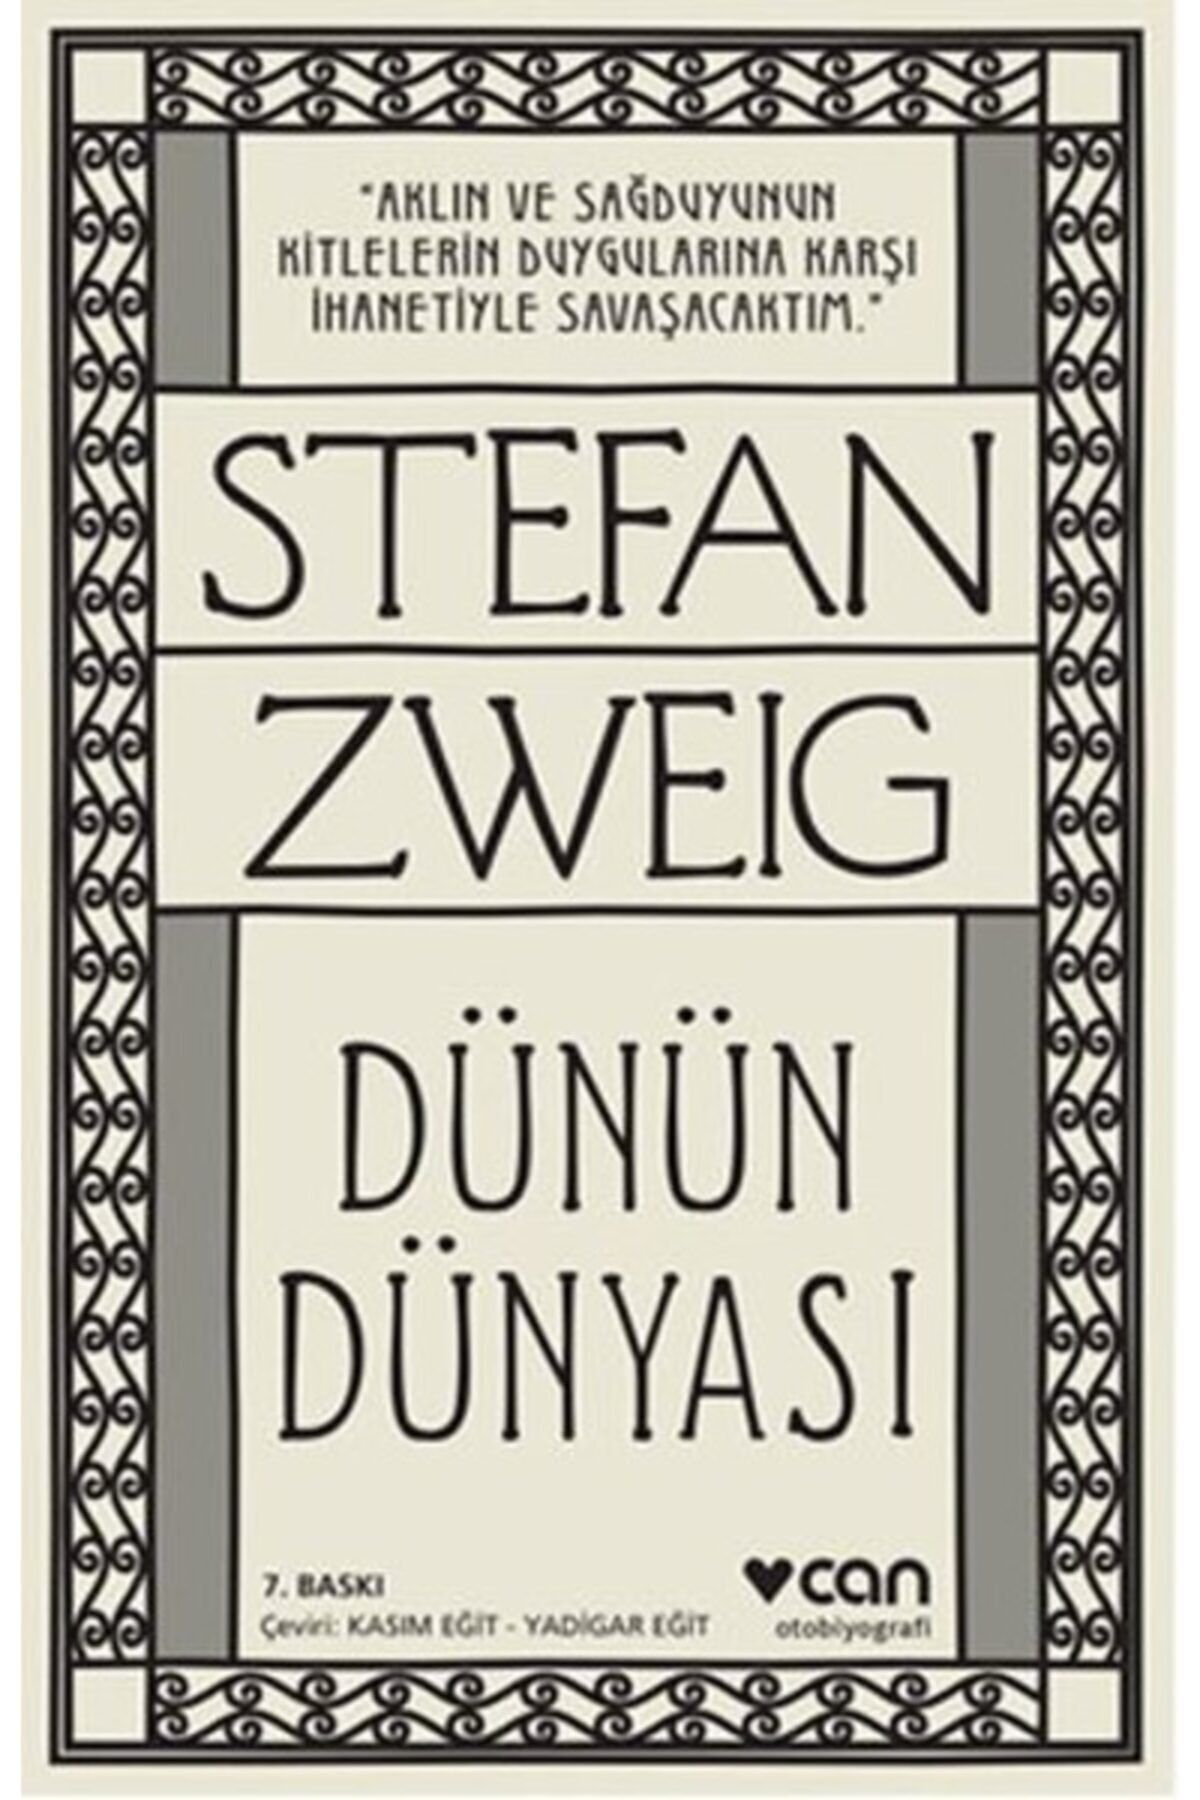 Güzem Can Yayınları Dünün Dünyası - Stefan Zweig - Can Yayınları